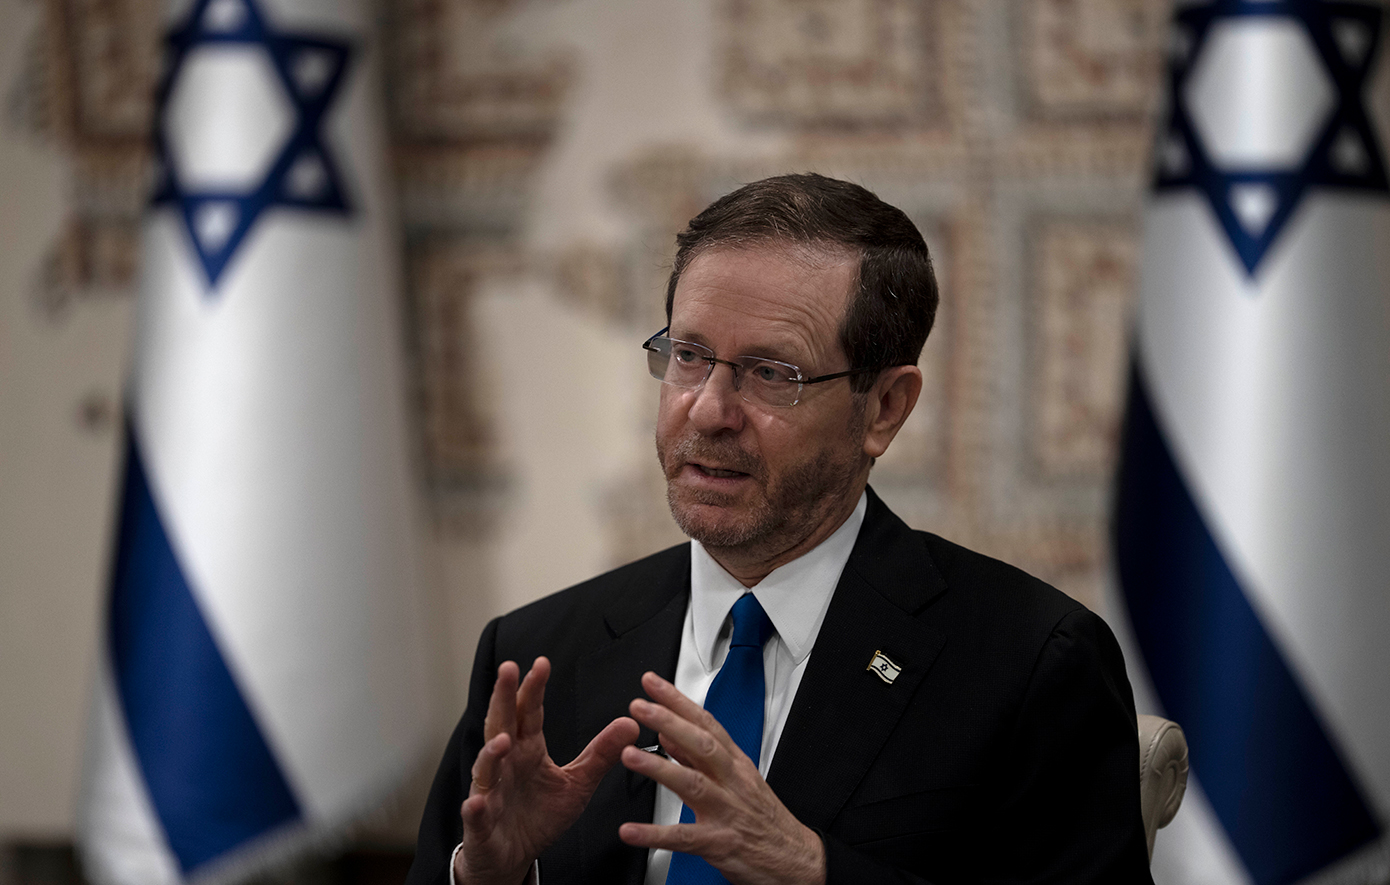 Ο πρόεδρος του Ισραήλ καταγγέλλει την «τρομακτική αναζωπύρωση του αντισημιτισμού» ιδίως στα αμερικανικά πανεπιστήμια